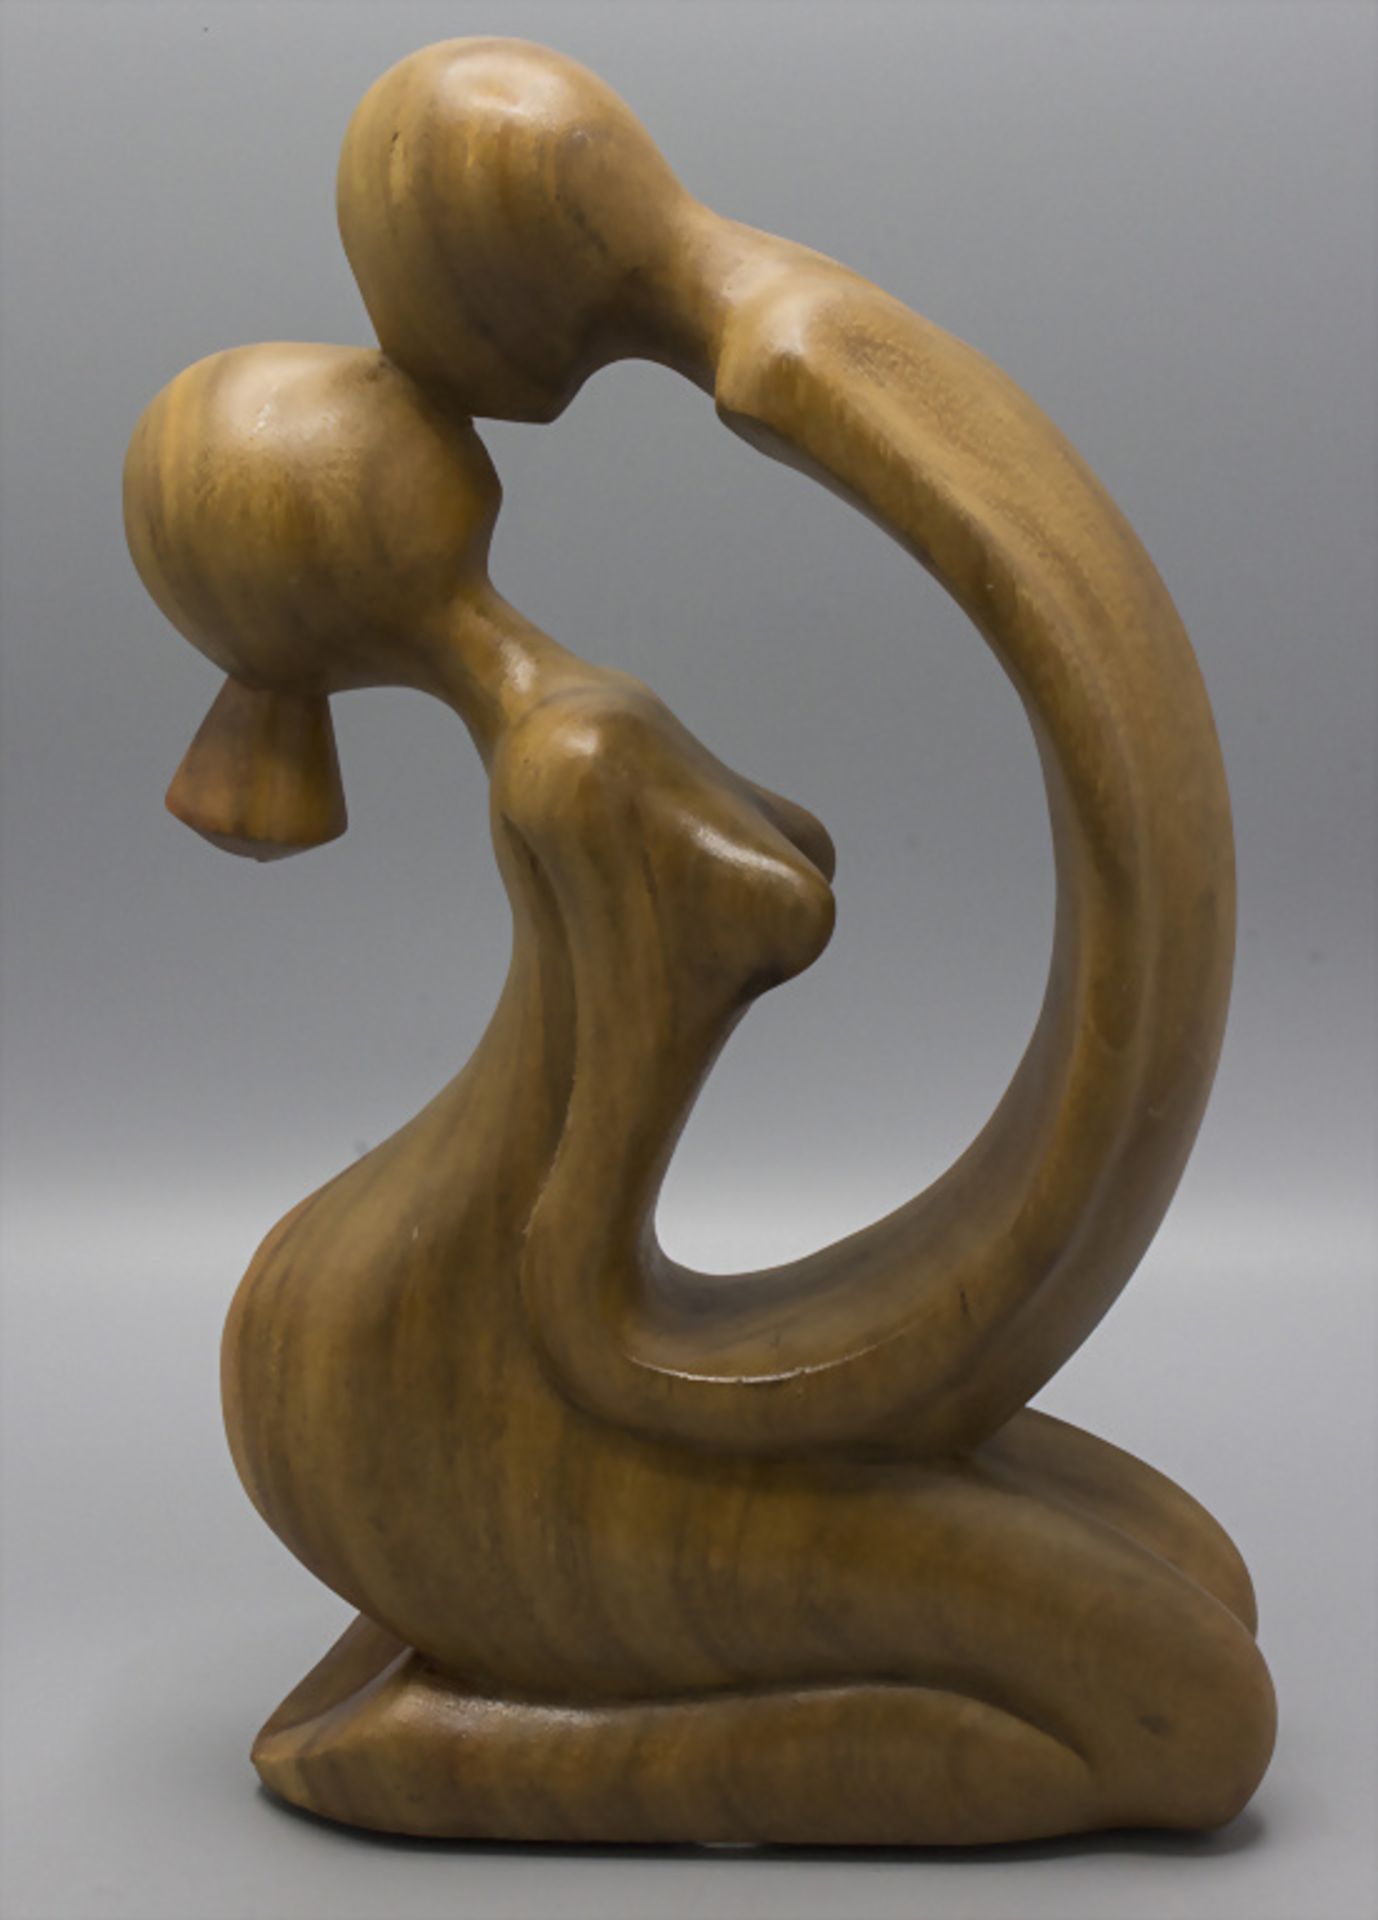 Abstrakte Holz-Skulptur 'Liebespaar' / An abstract wooden sculpture 'lovers' - Bild 2 aus 2